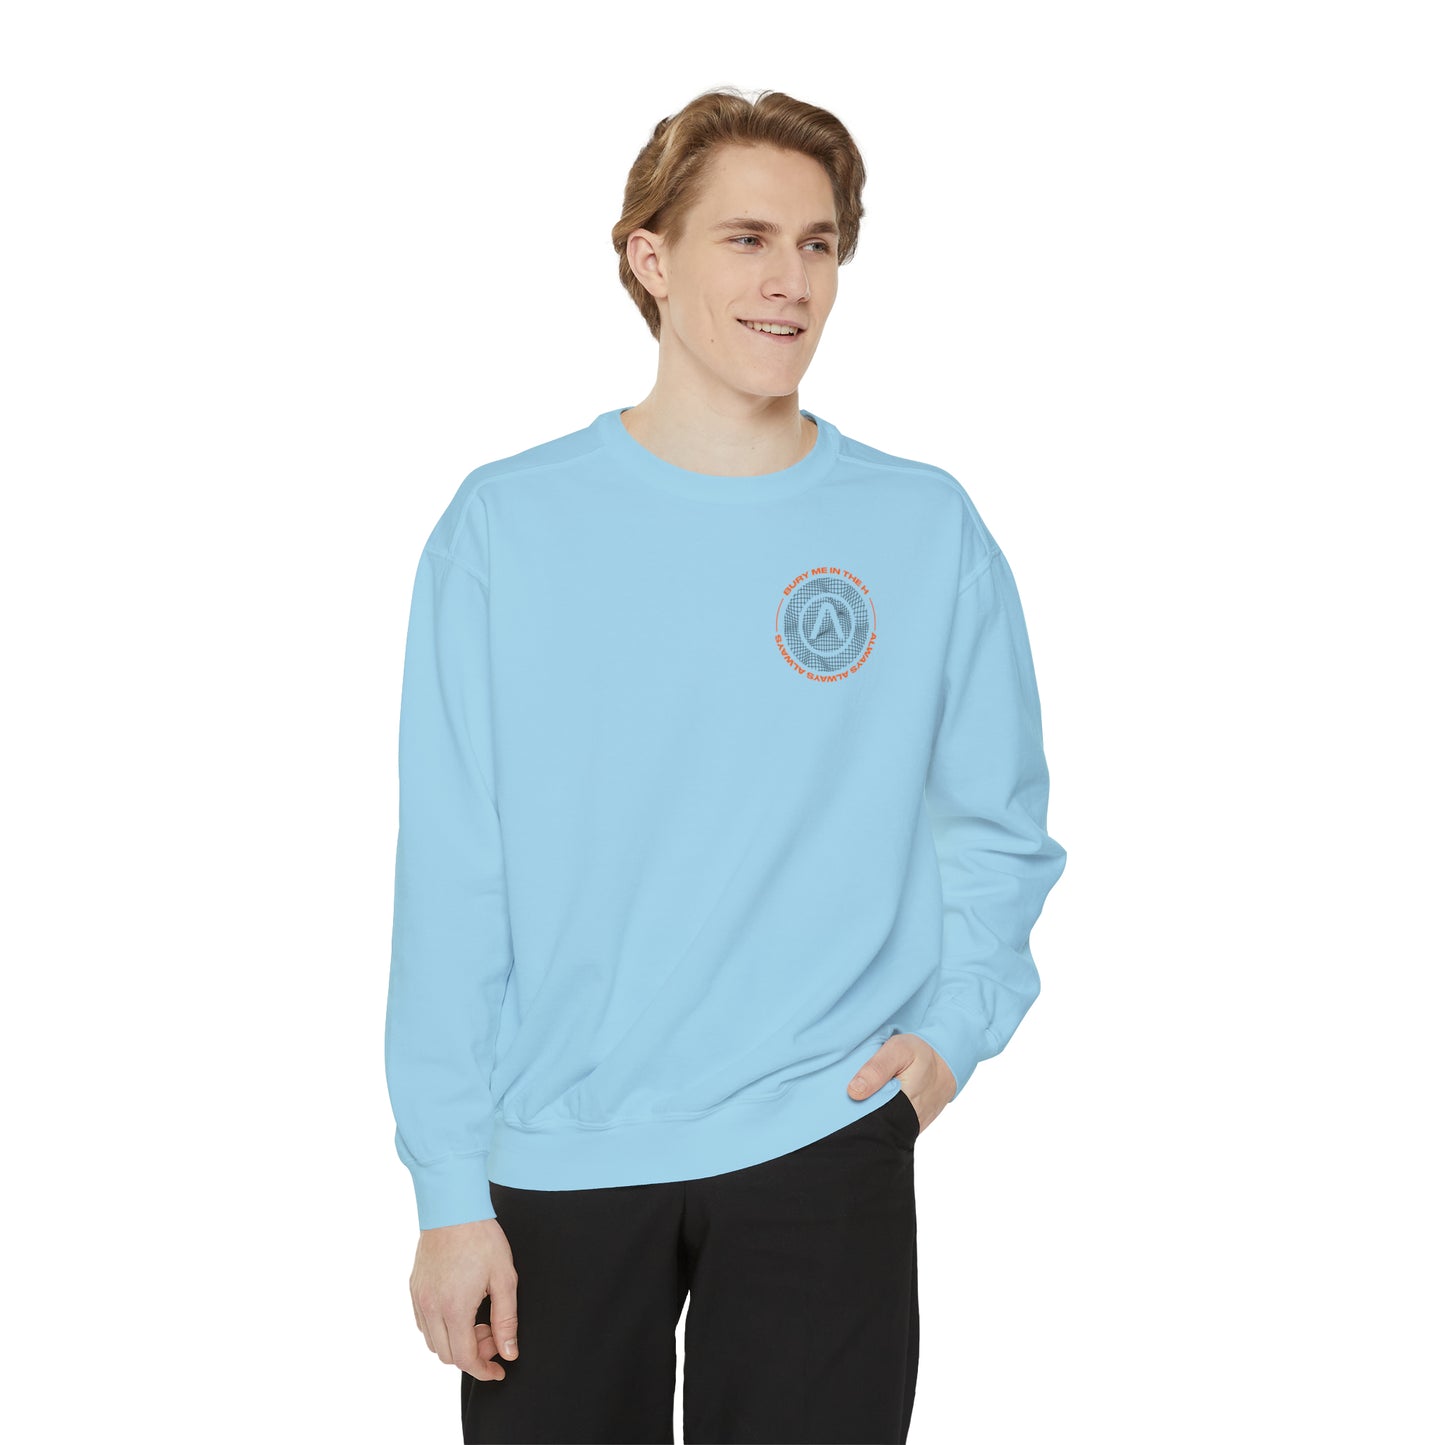 Bury Me In The H (Nova) Unisex Comfort Colors Sweatshirt